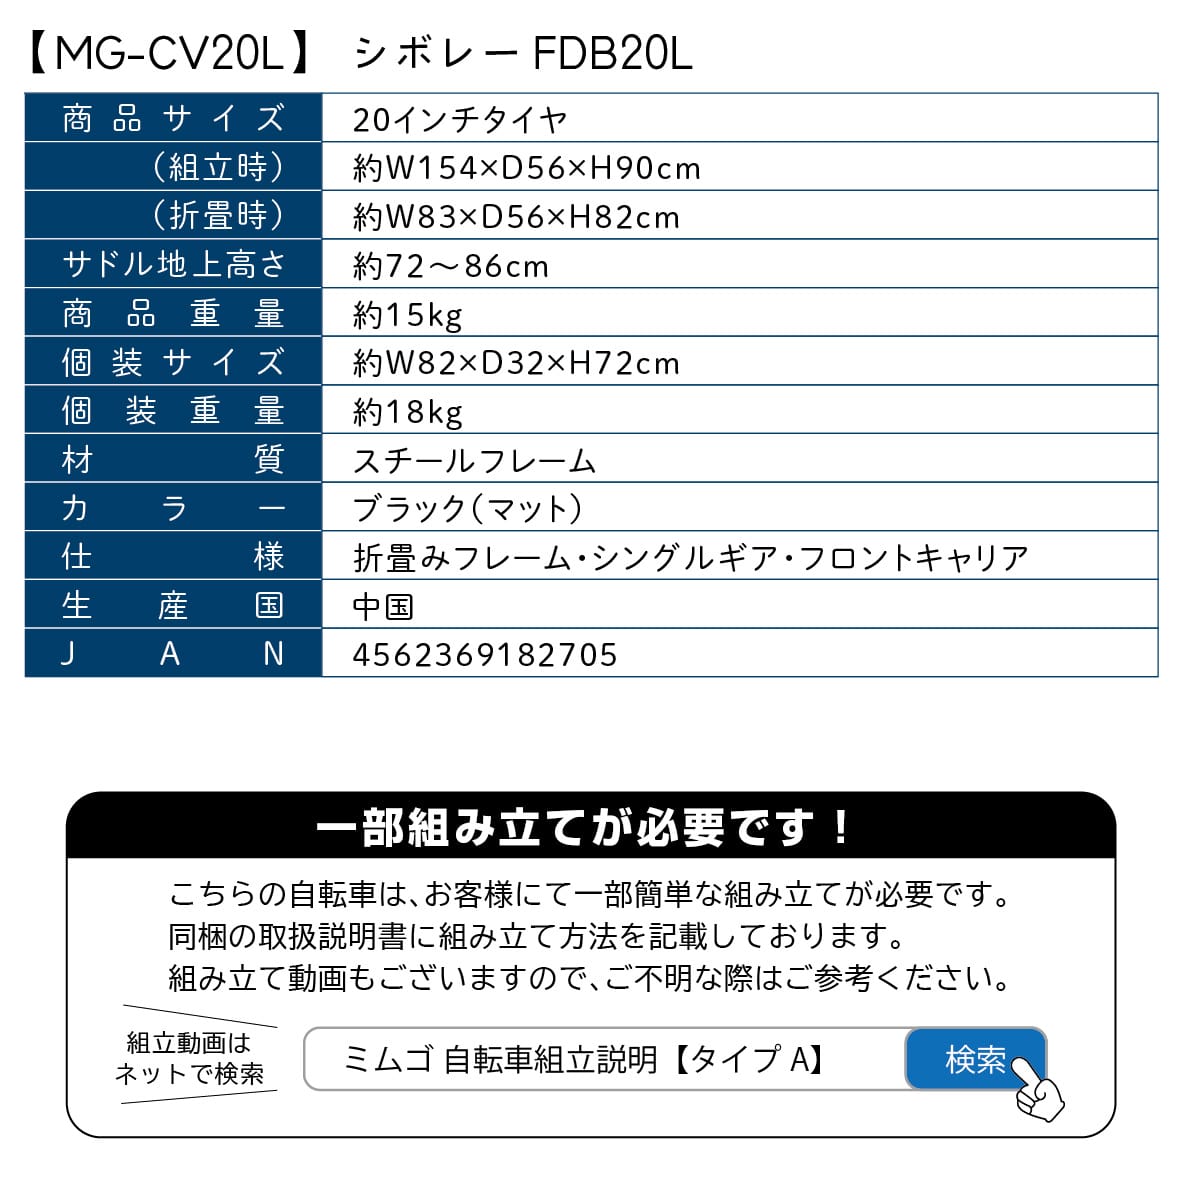 [直送5]FDB20L MG-CV20L マットブラック